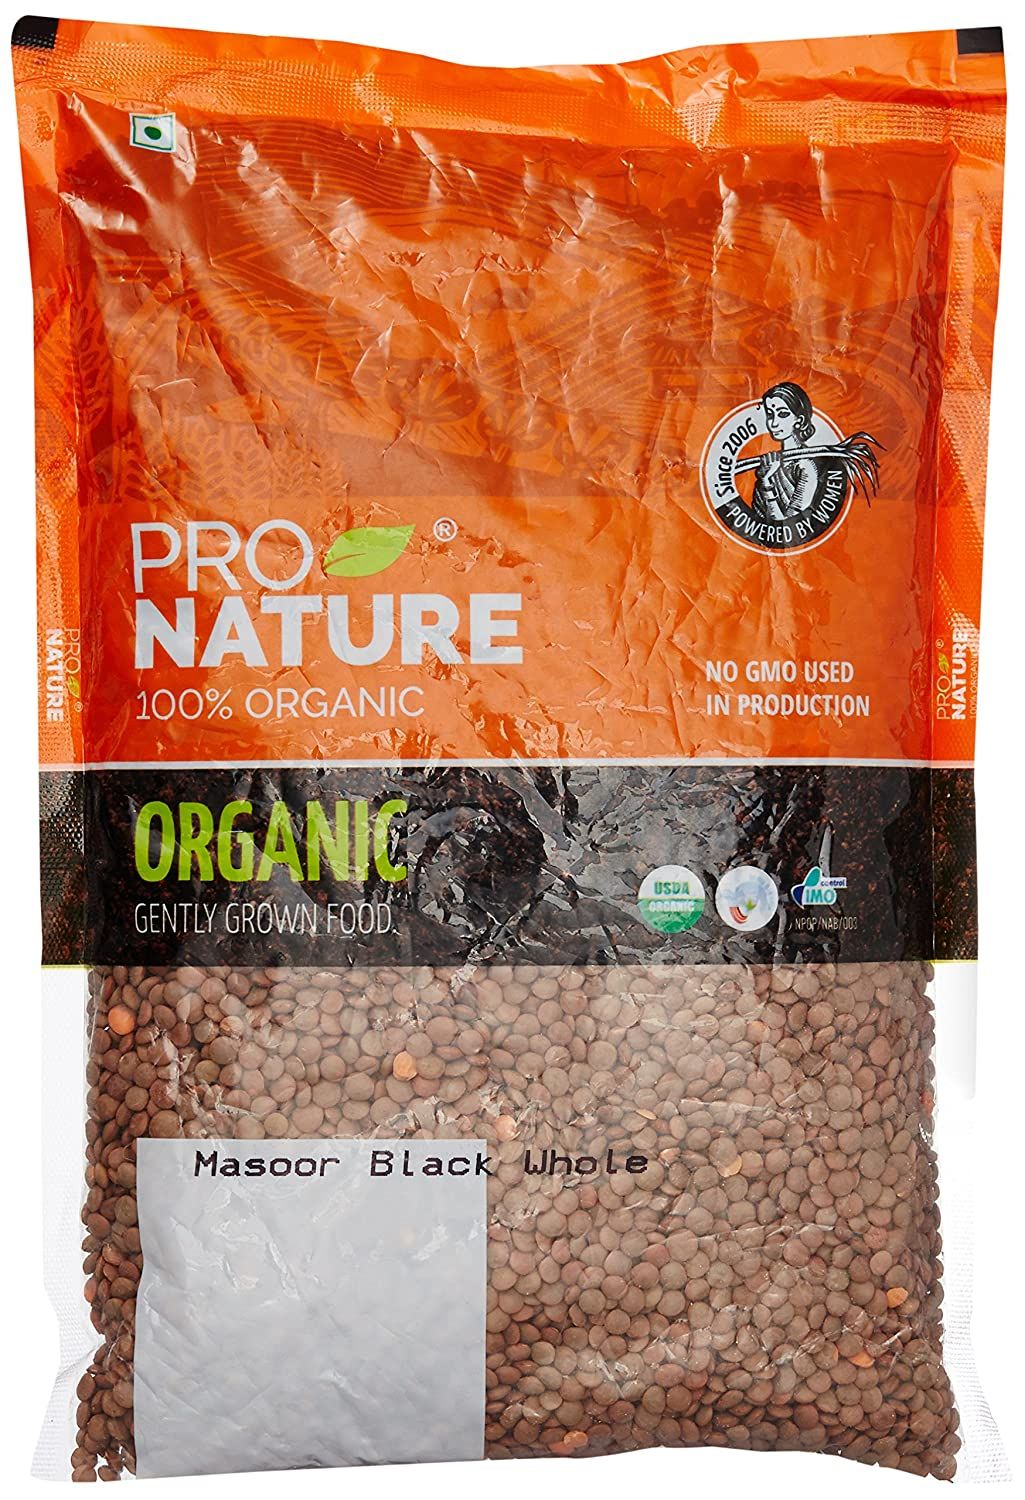 Pro Nature 100% Organic Masoor Black Whole Image